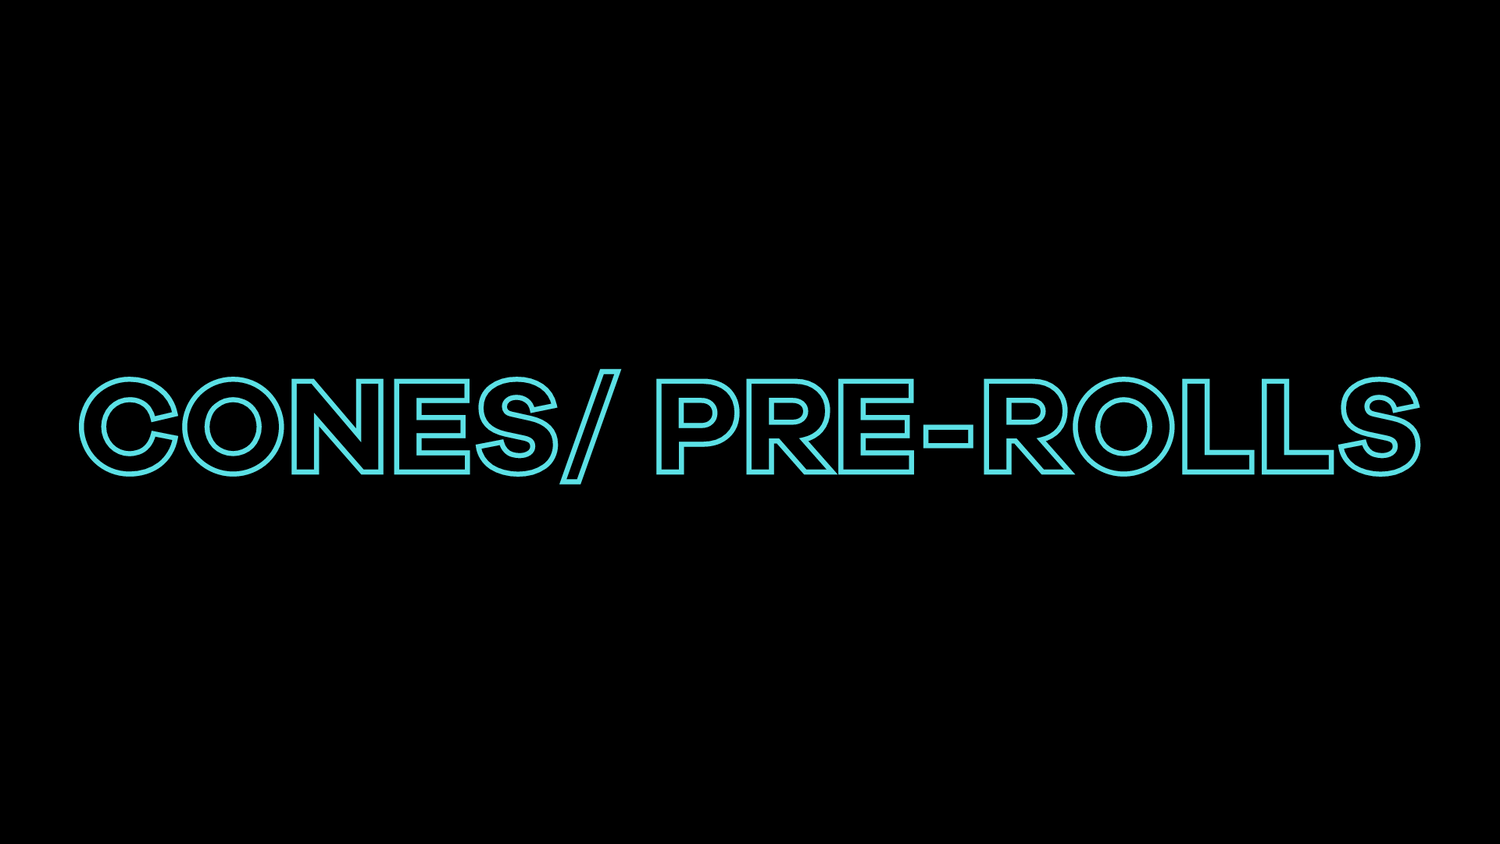 Pre-Rolls/ Cones